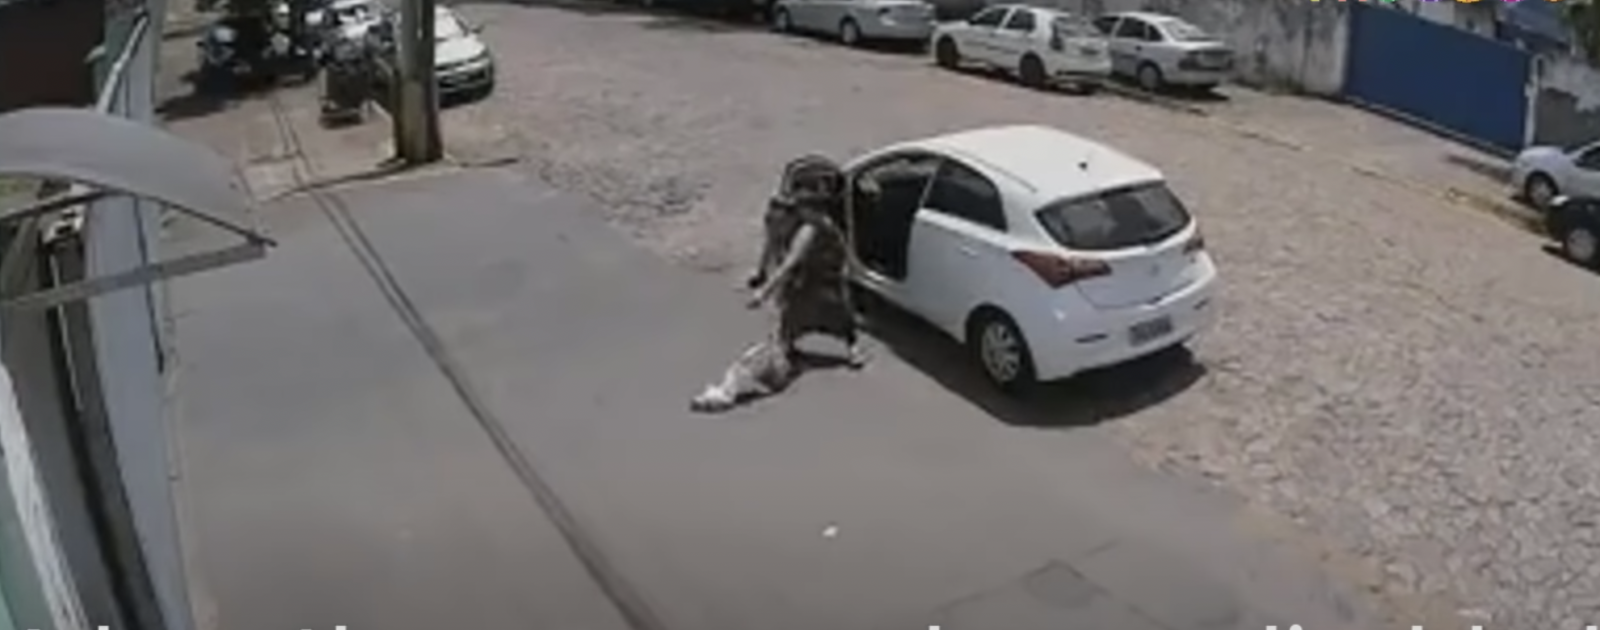 White car with woman abandoning white dog